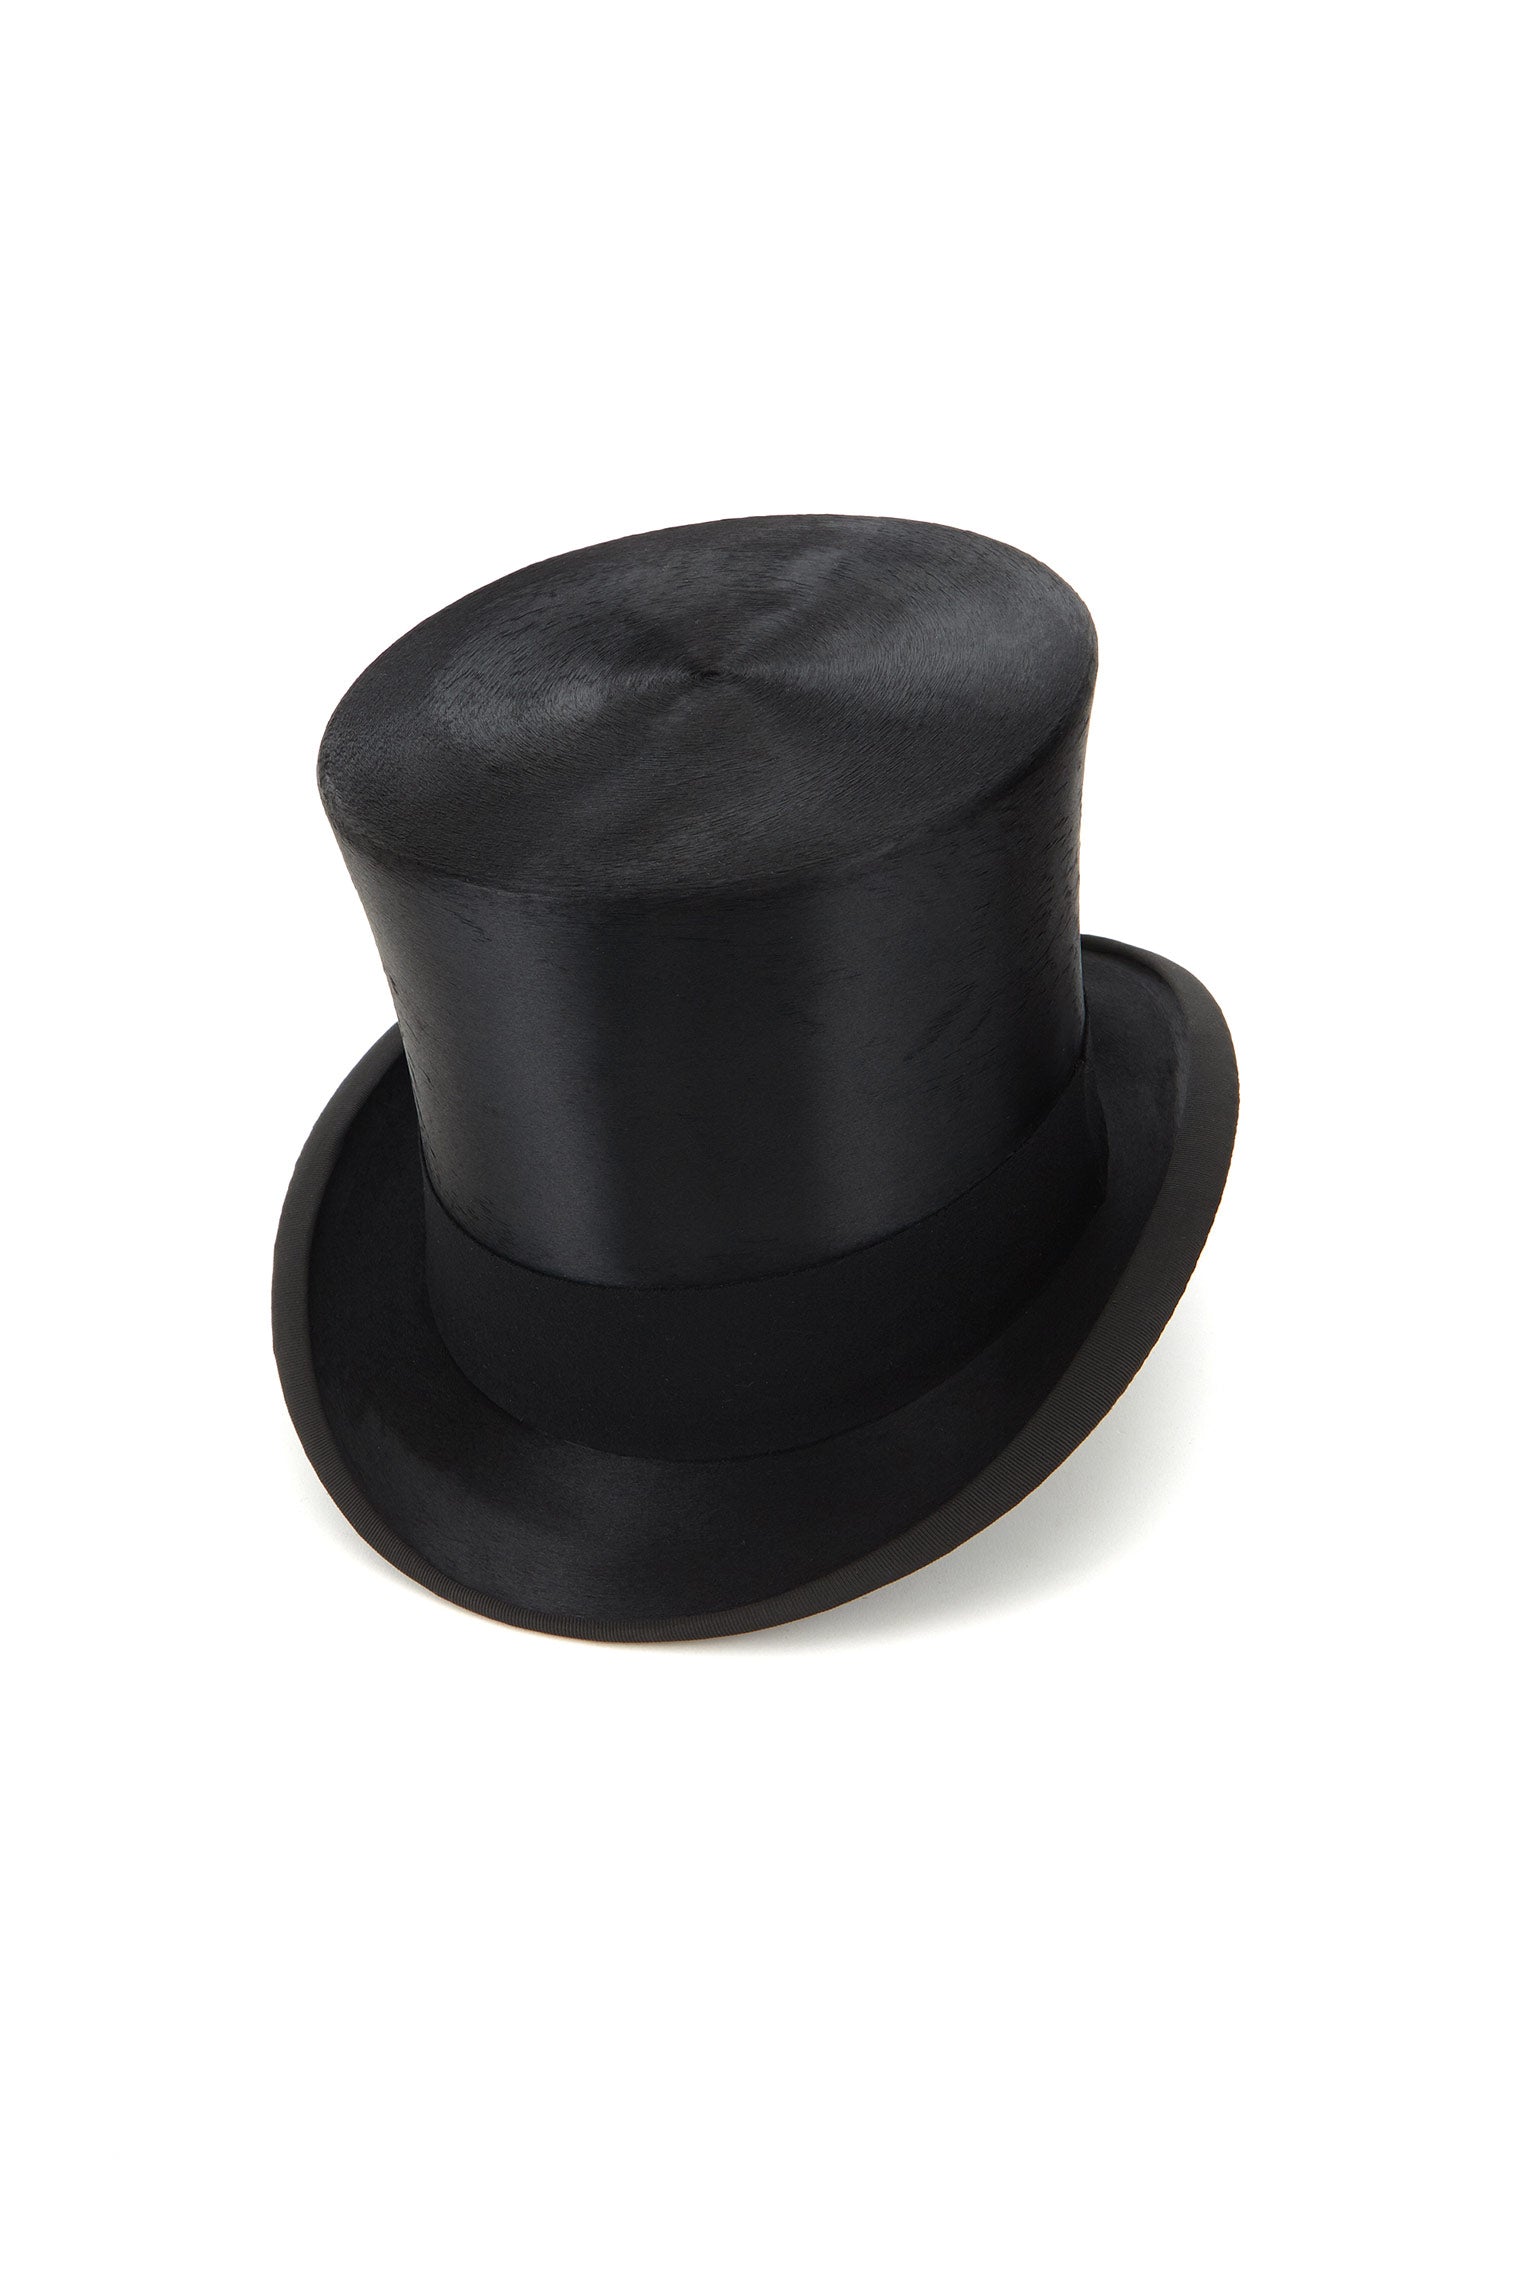 Silk Top Hat - Top Hats - Lock & Co. Hatters London UK